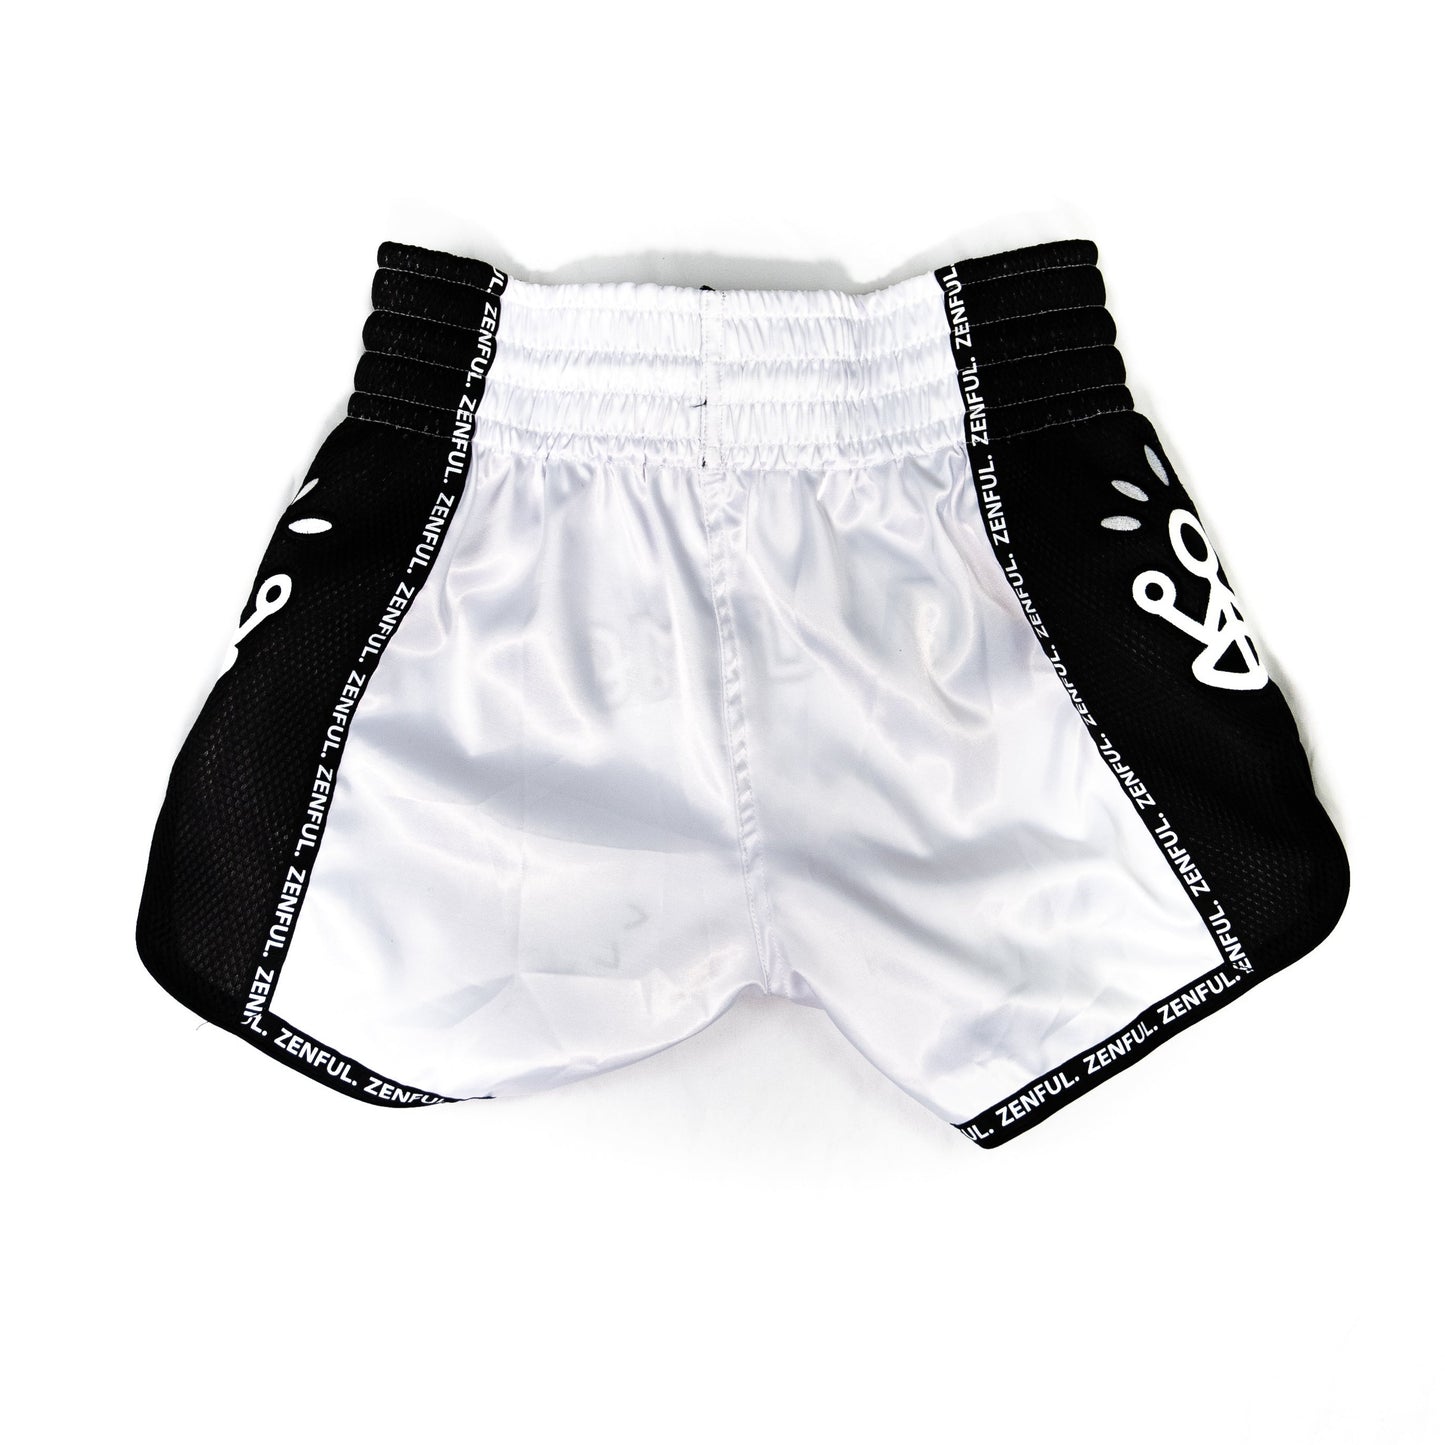 ZM Yogi Muay Thai Shorts